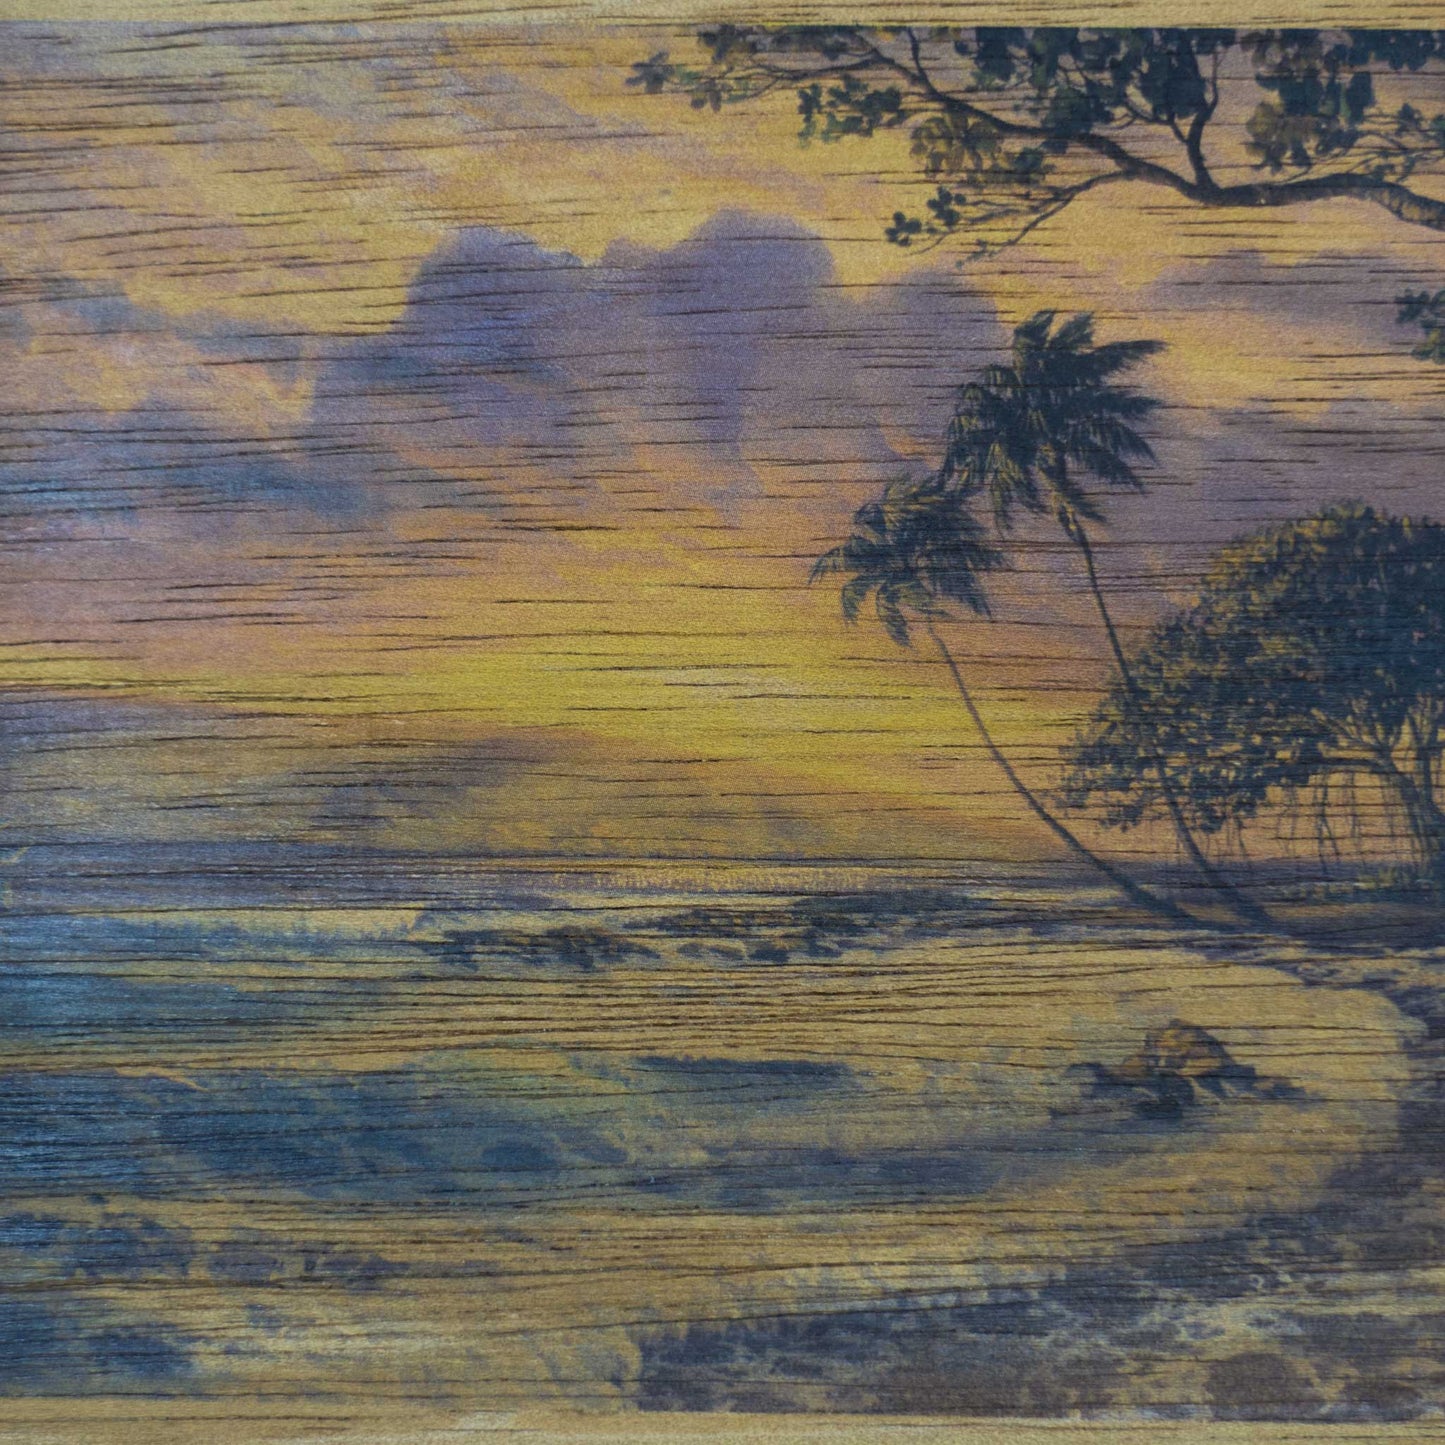 Koa Wood Veneer Handmade Postcard - Hawaiian Beach